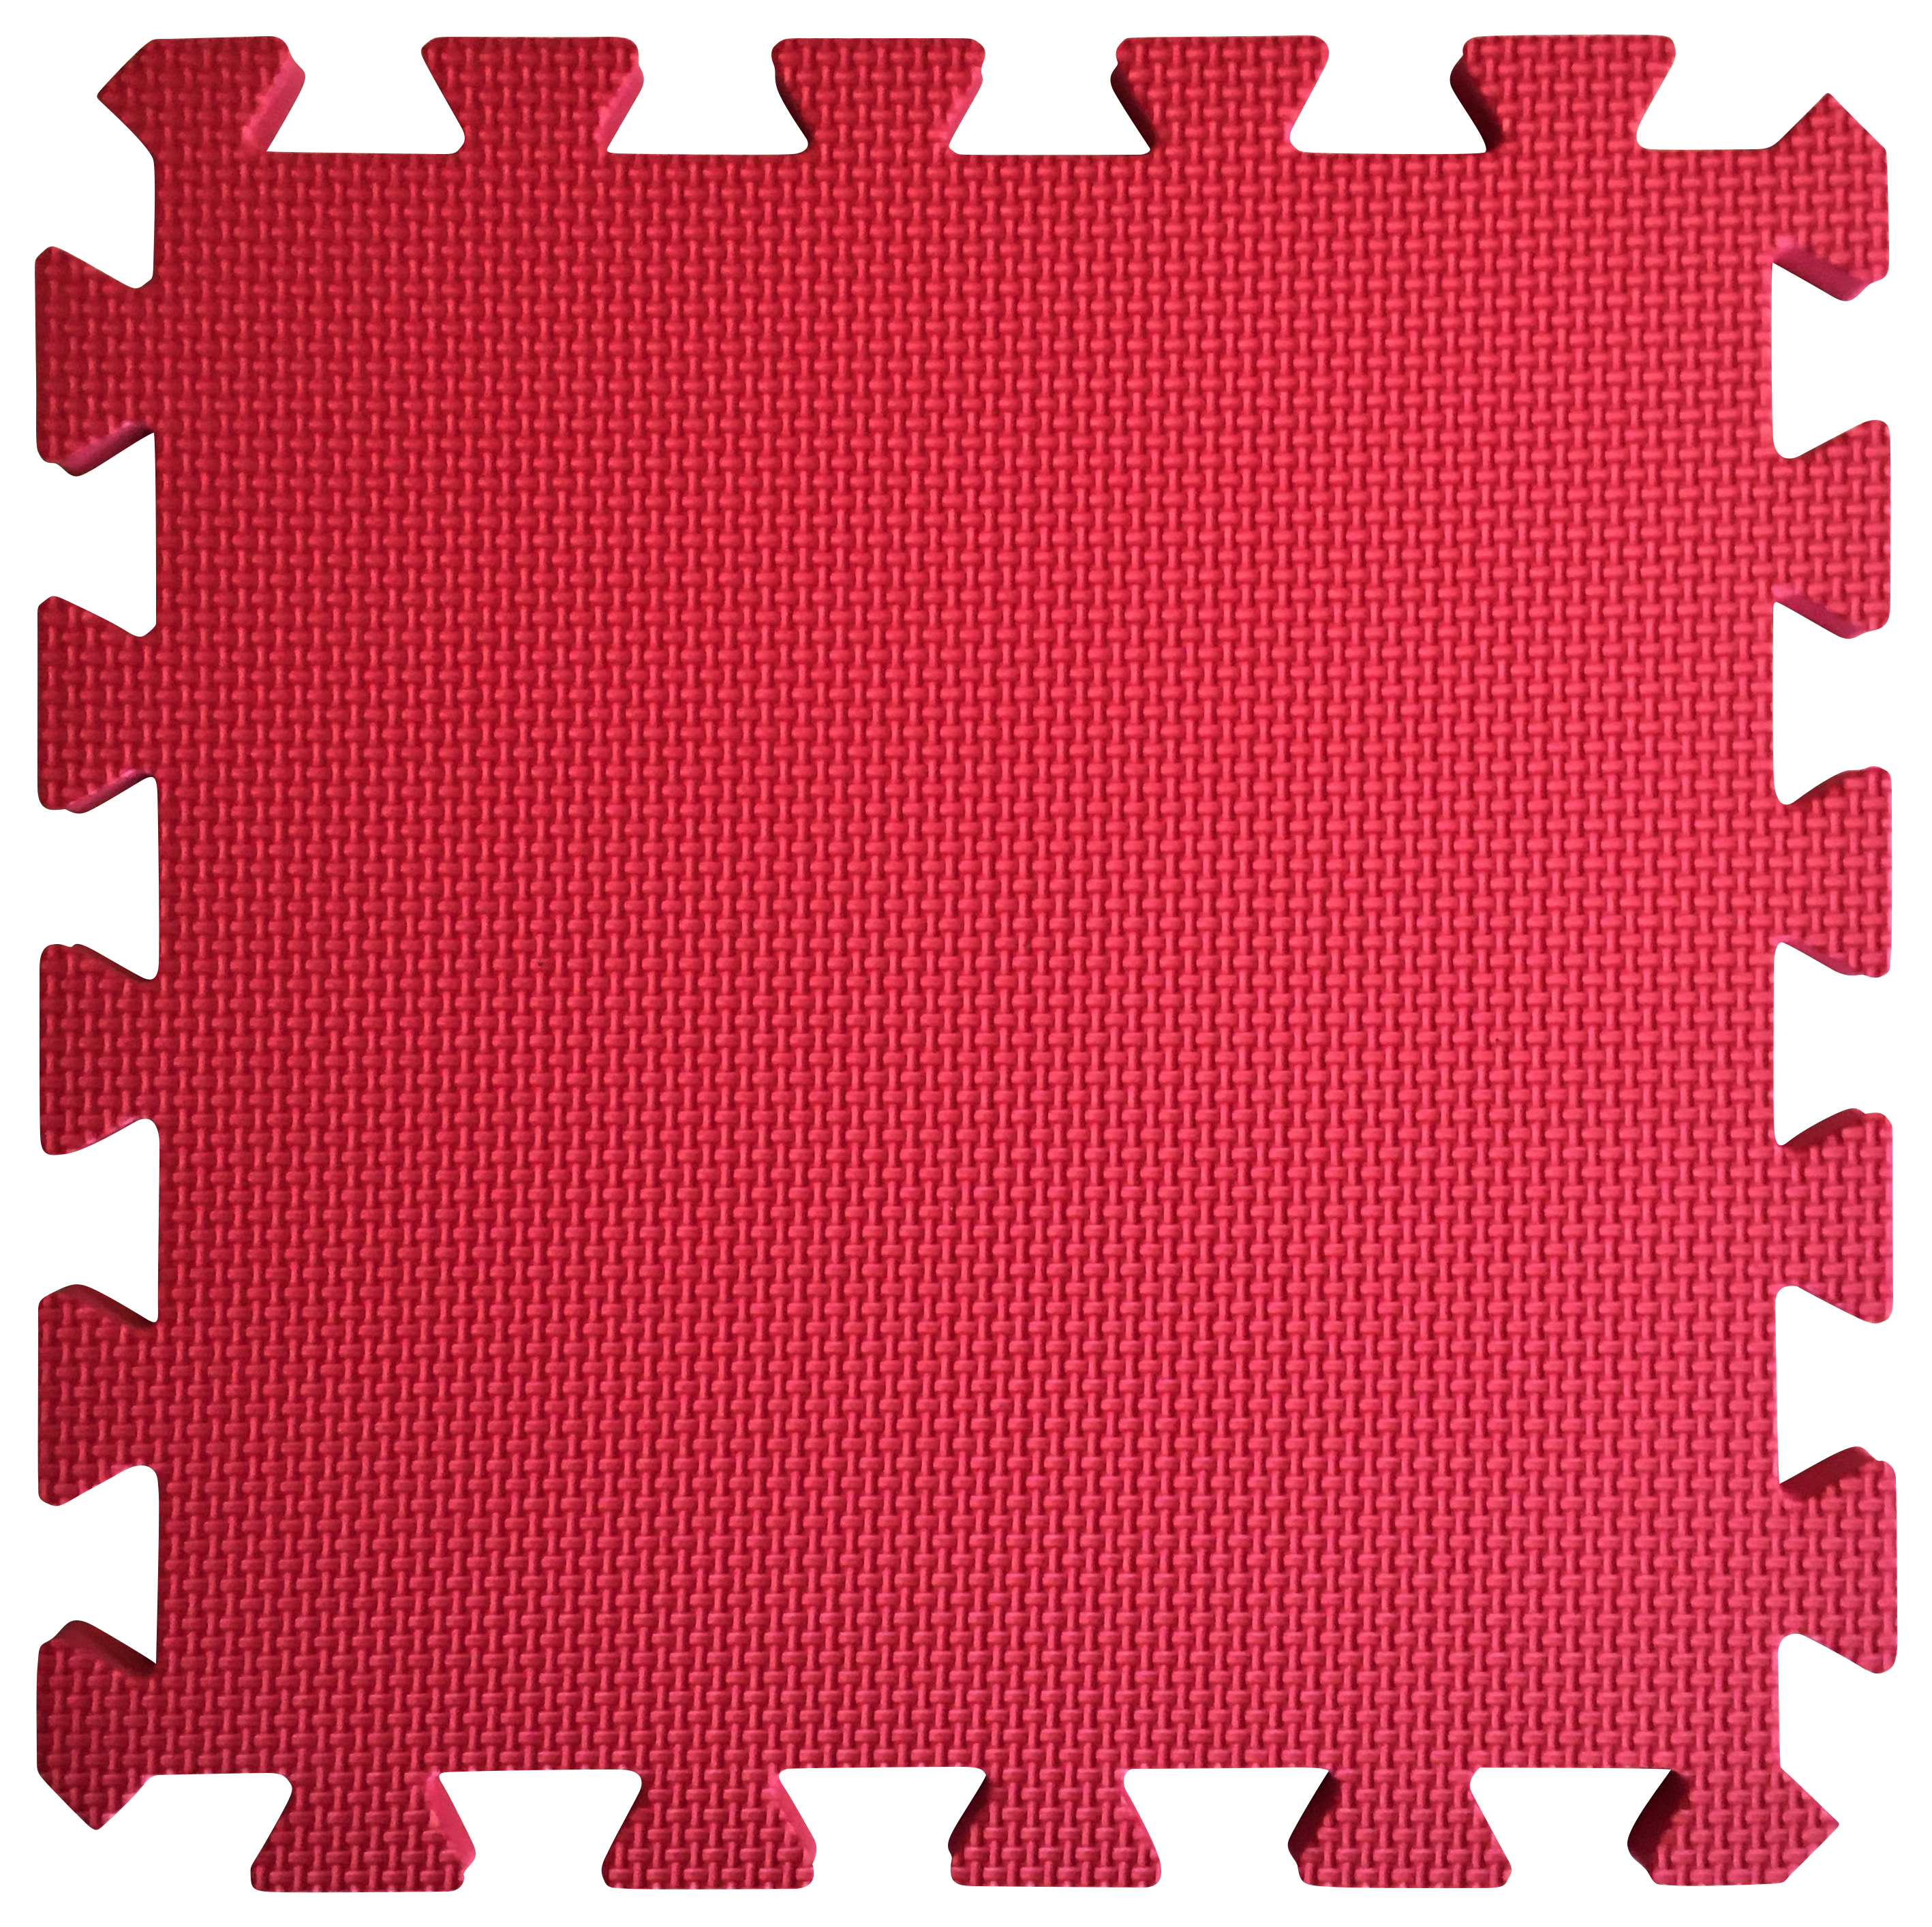 Image of Warm Floor Red Interlocking Floor Tiles for Garden Buildings - 4 x 6ft & 8 x 3ft